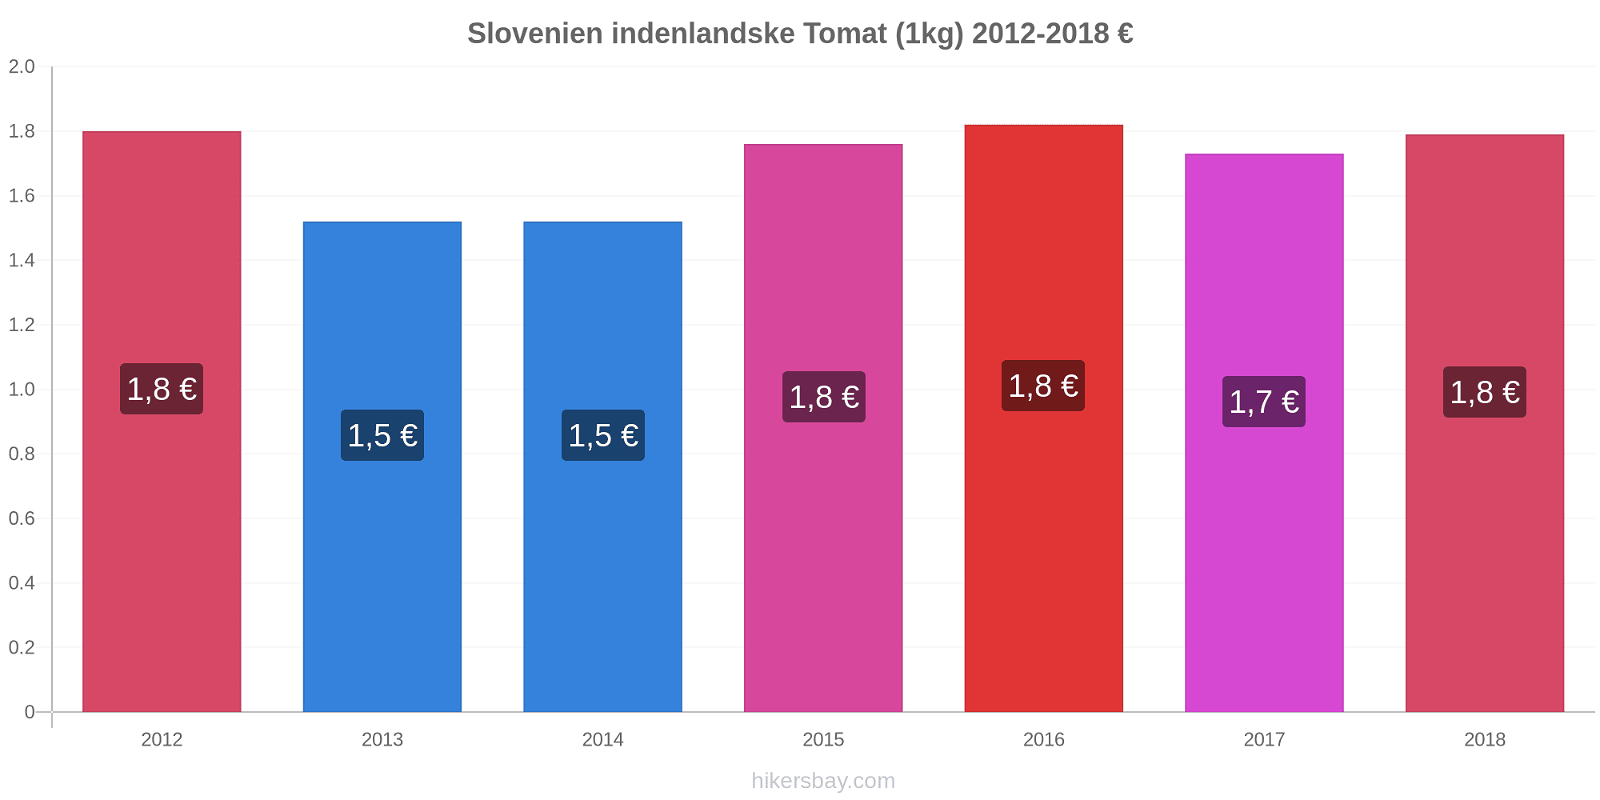 Slovenien indenlandske prisændringer Tomat (1kg) hikersbay.com